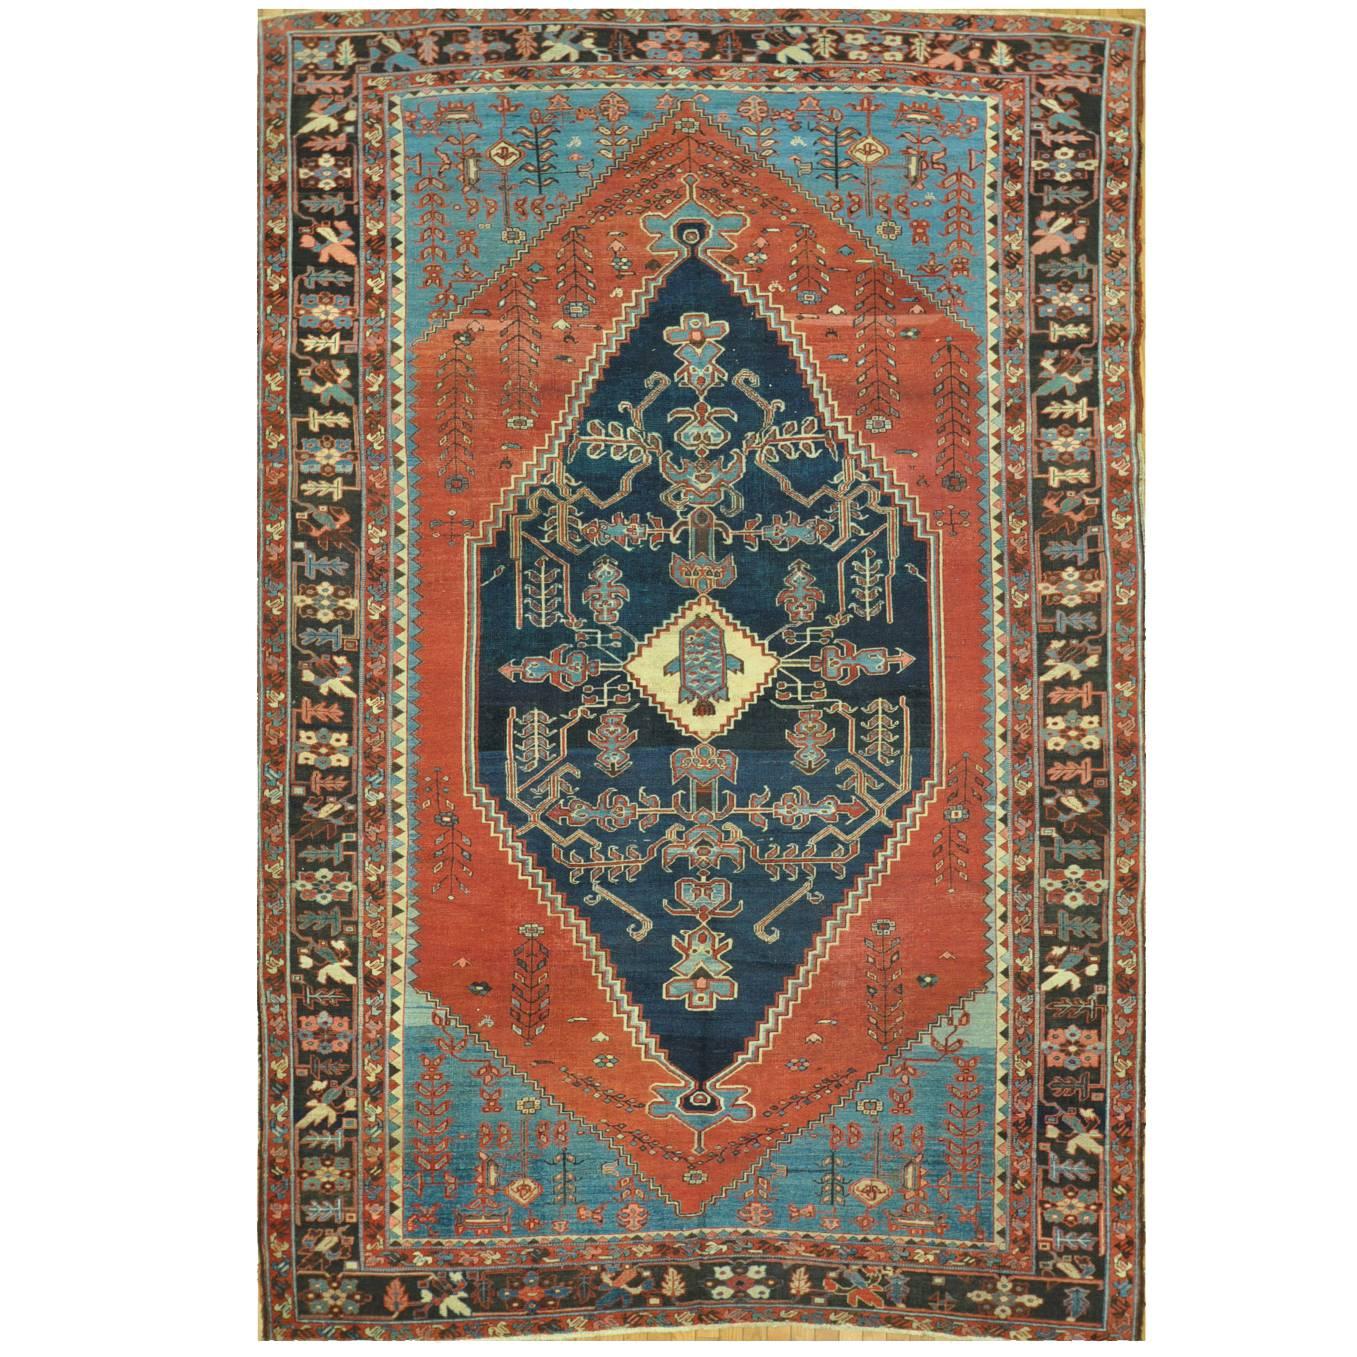 Late 19th Century Antique Persian Bakshaish Rug